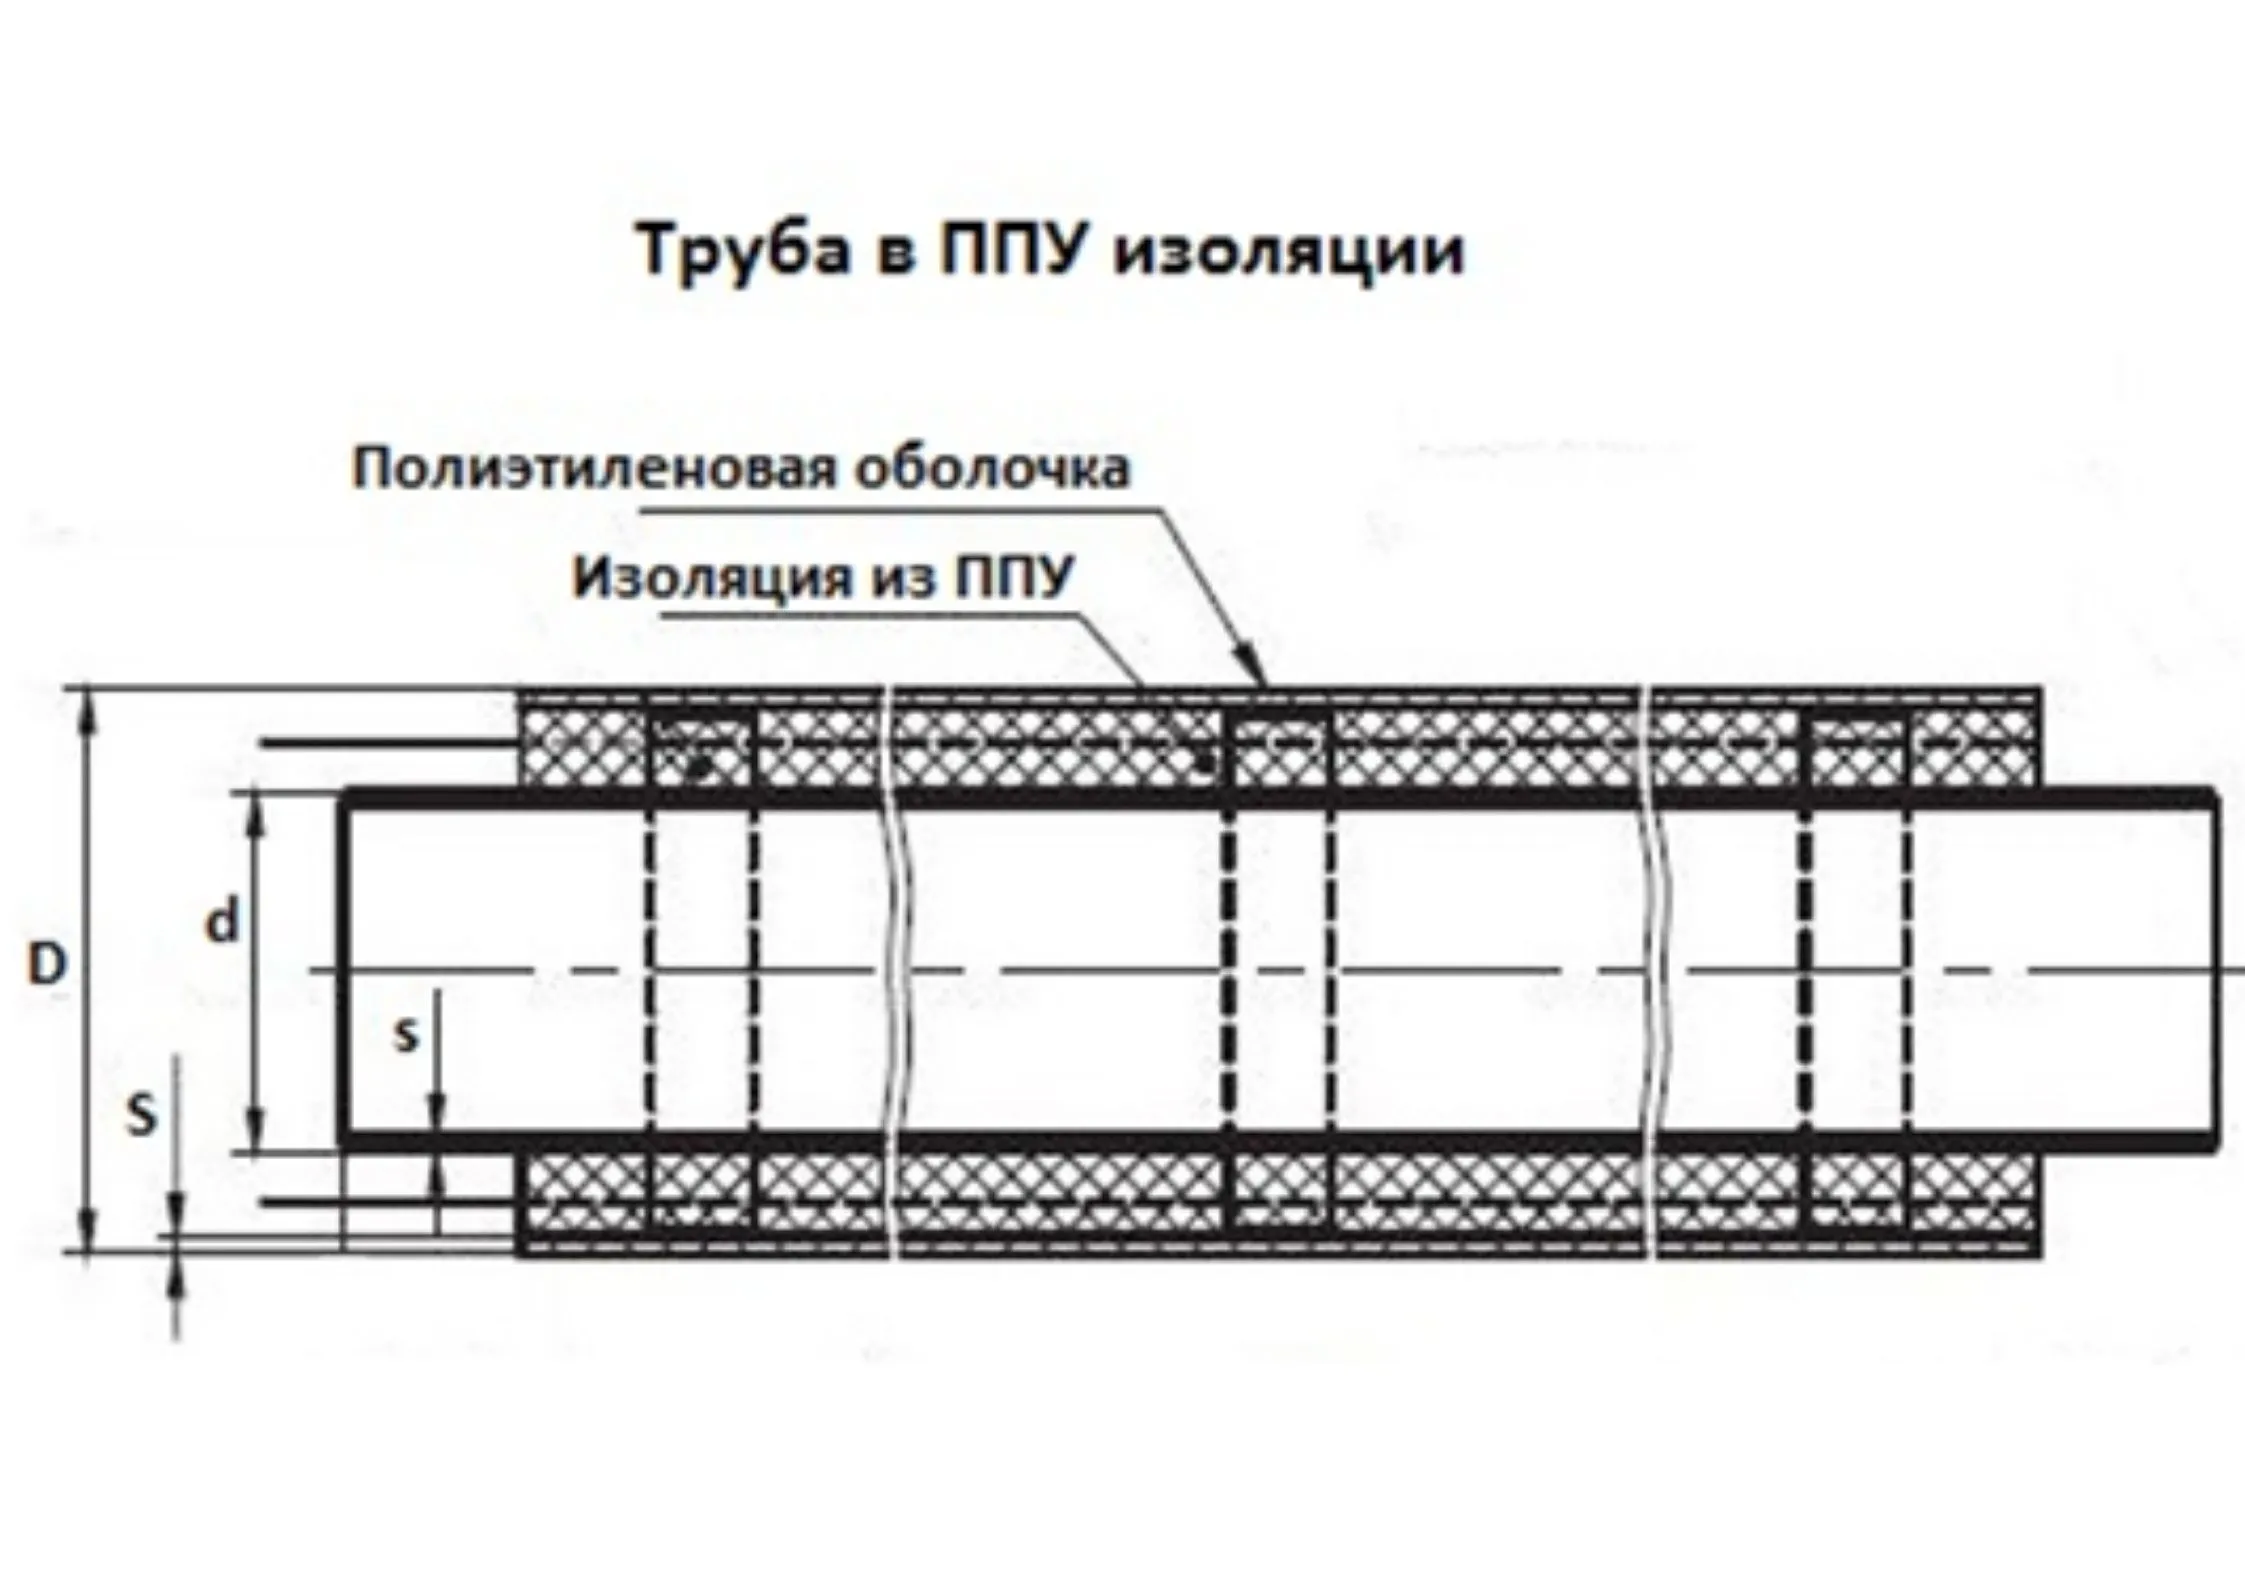 Трубы ППУ 150 в мм «Альфа-тех» в Воронеже